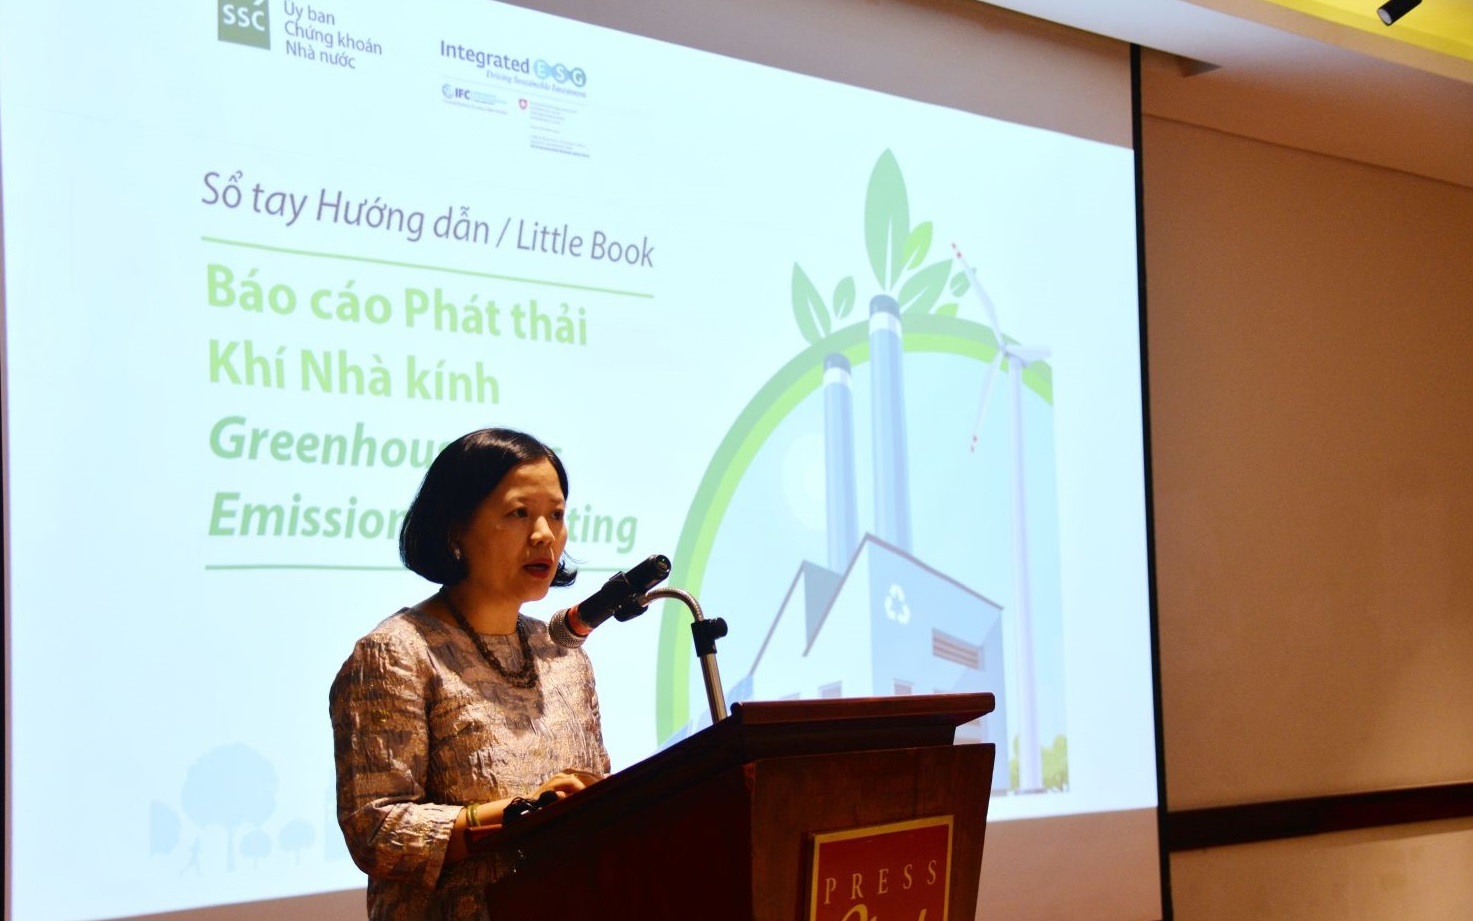 Bà Nguyễn Thiên Hương - Phụ trách chương trình Tư vấn phát triển bền vững của IFC phát biểu tại buổi ra mắt Sổ tay.